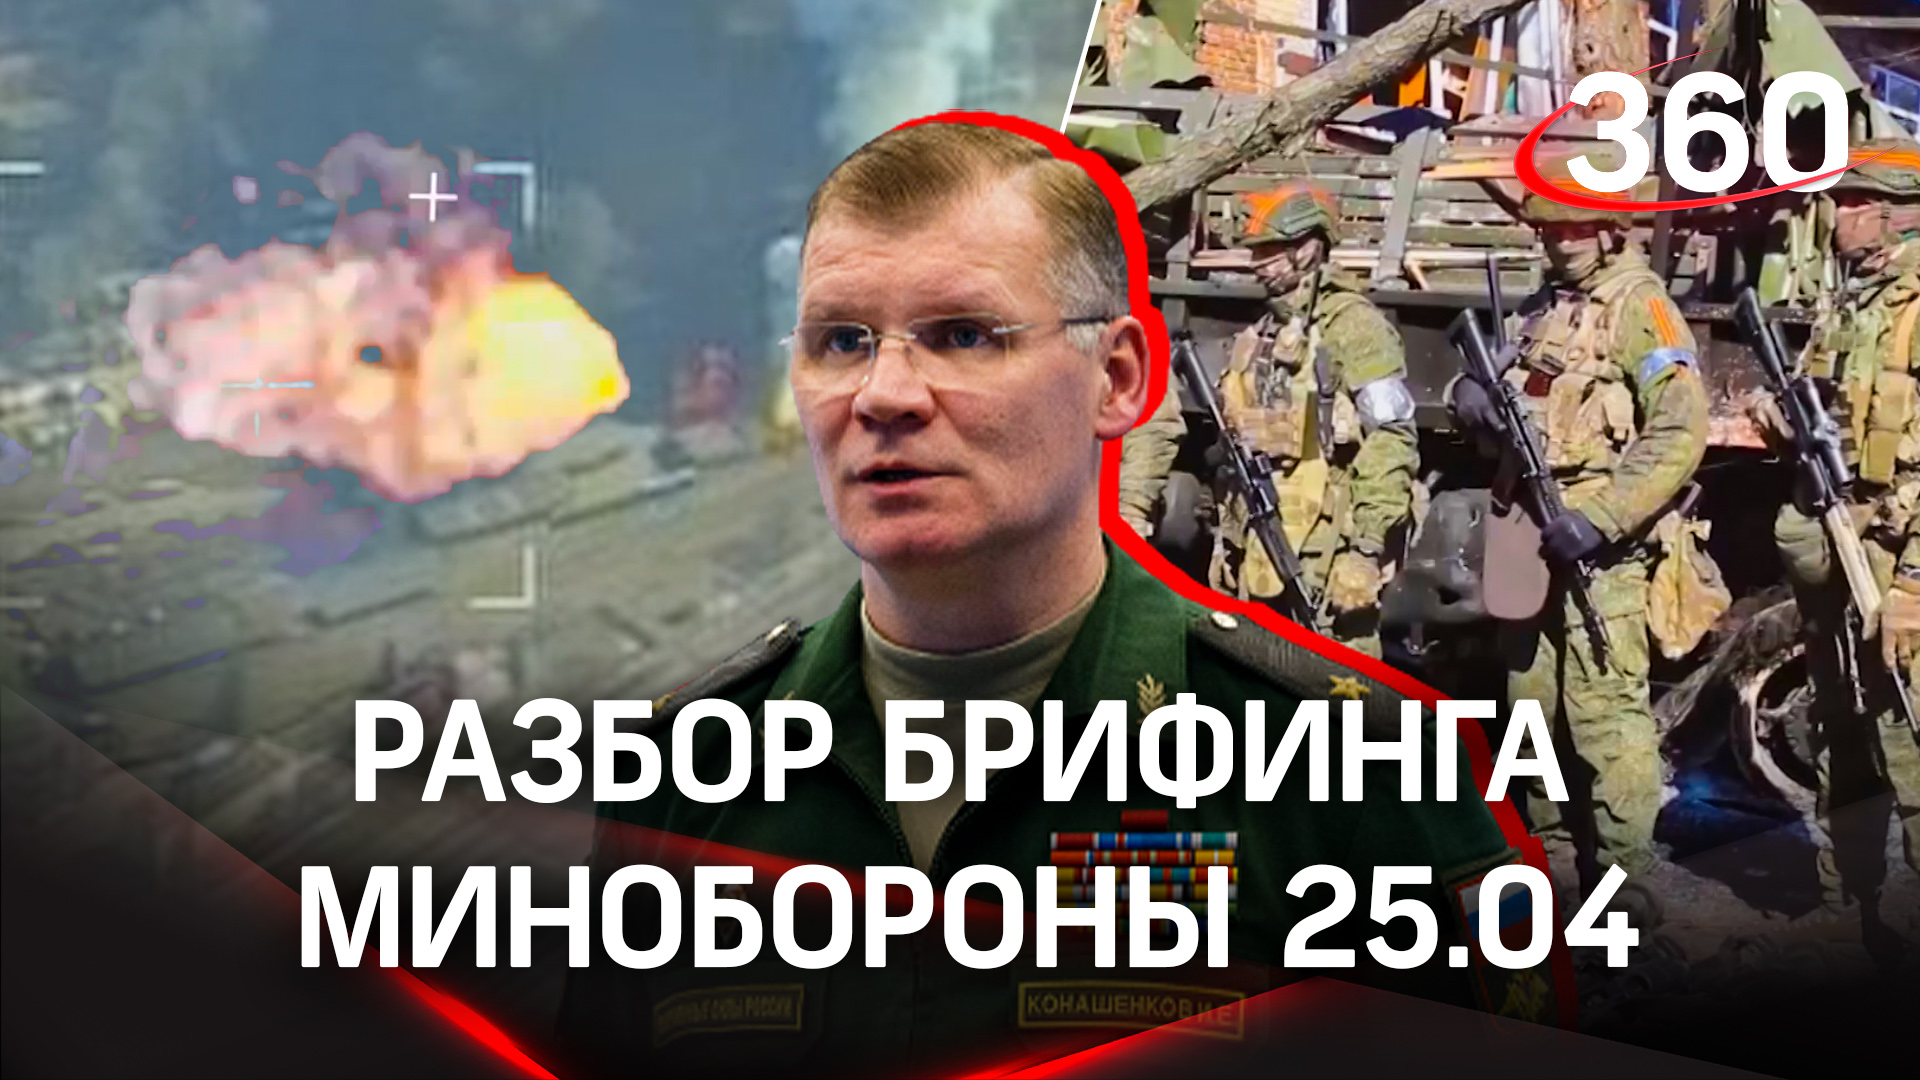 Военные РФ обесточили тяговые подстанции Украины, подорвав поставки иностранного вооружения Киеву